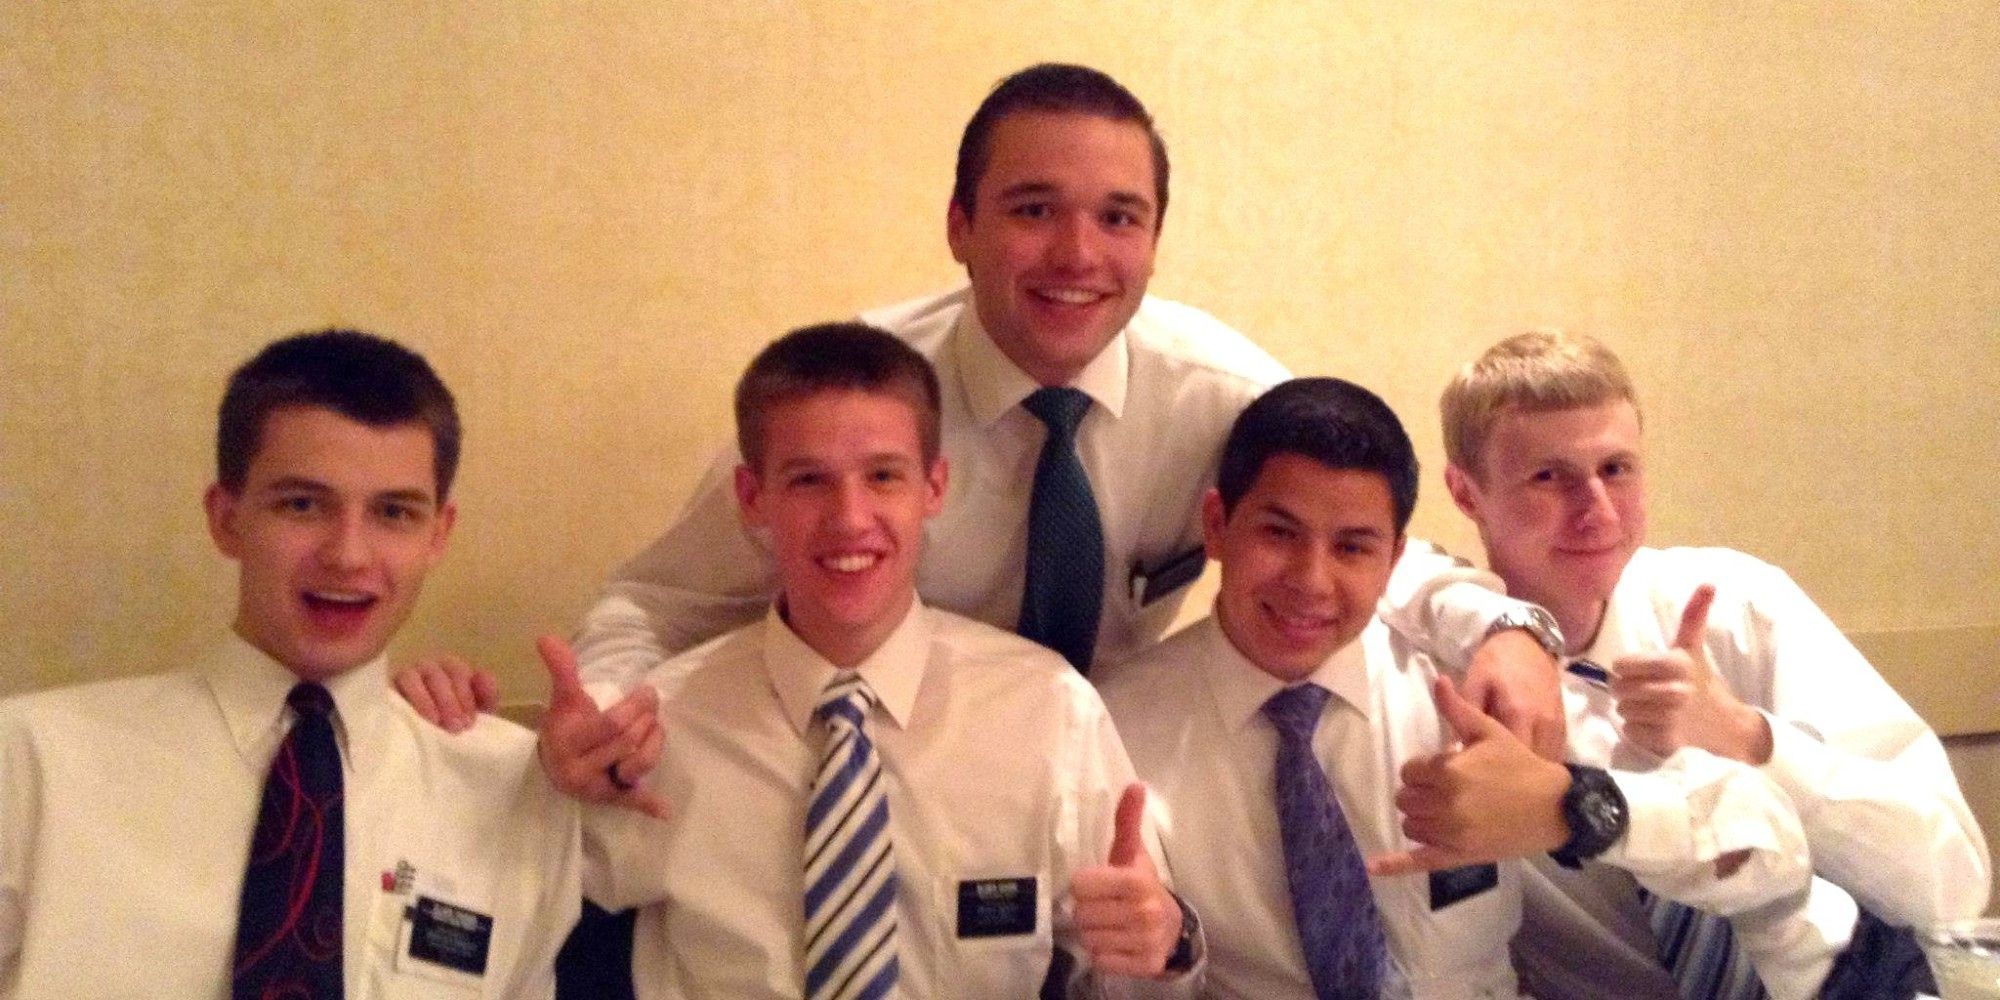 Tailgate reccomend Missionary mormon sex